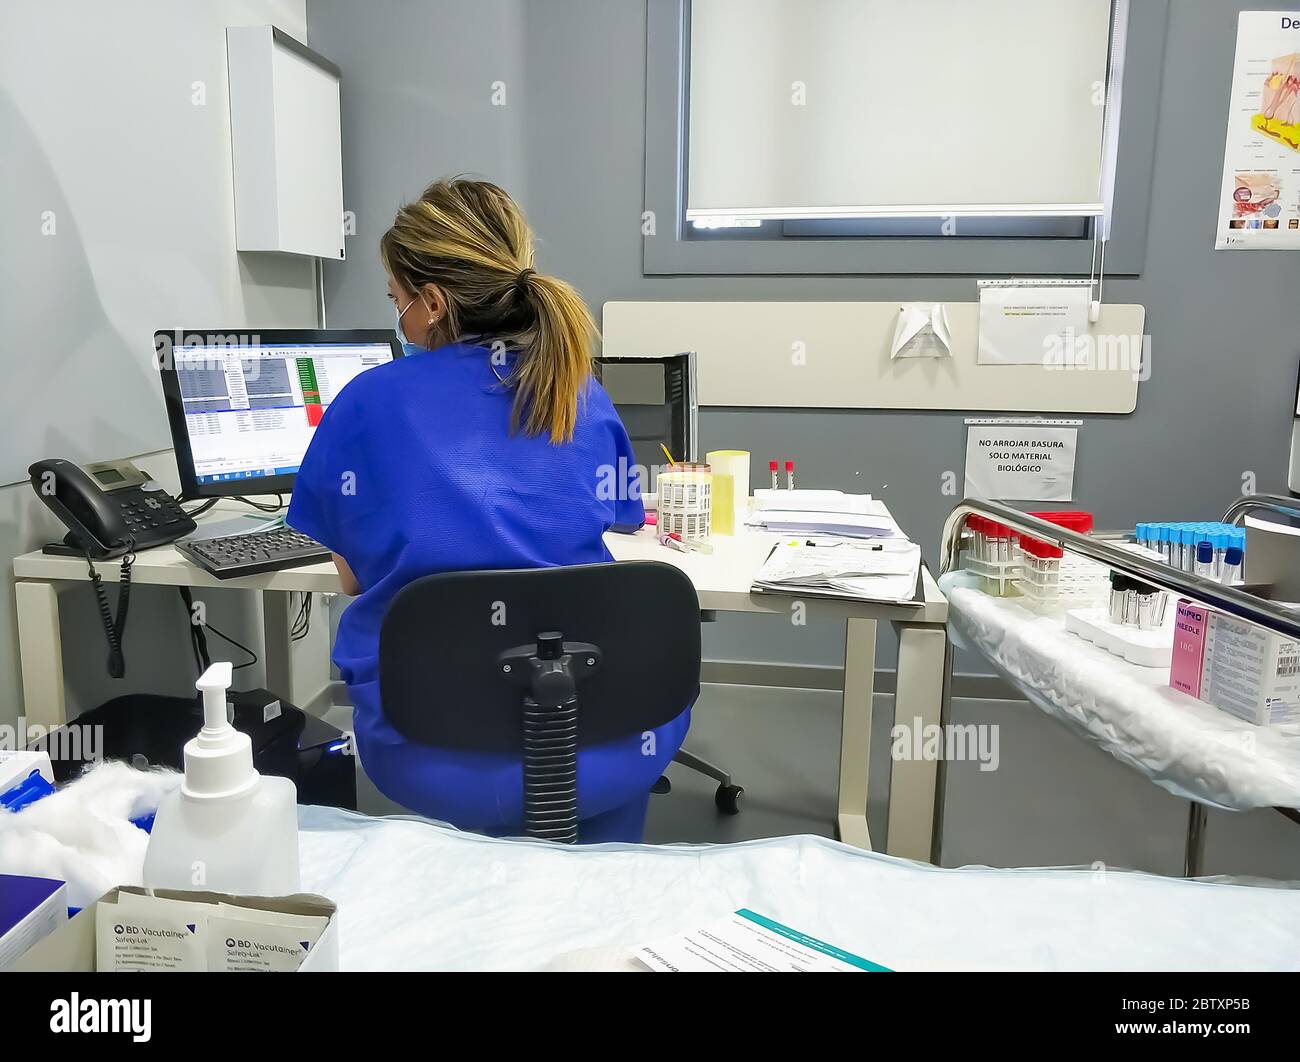 Huelva, Spagna - 28 maggio 2020: Infermiere che lavora in un laboratorio medico in ospedale Quironsalud Huelva Foto Stock